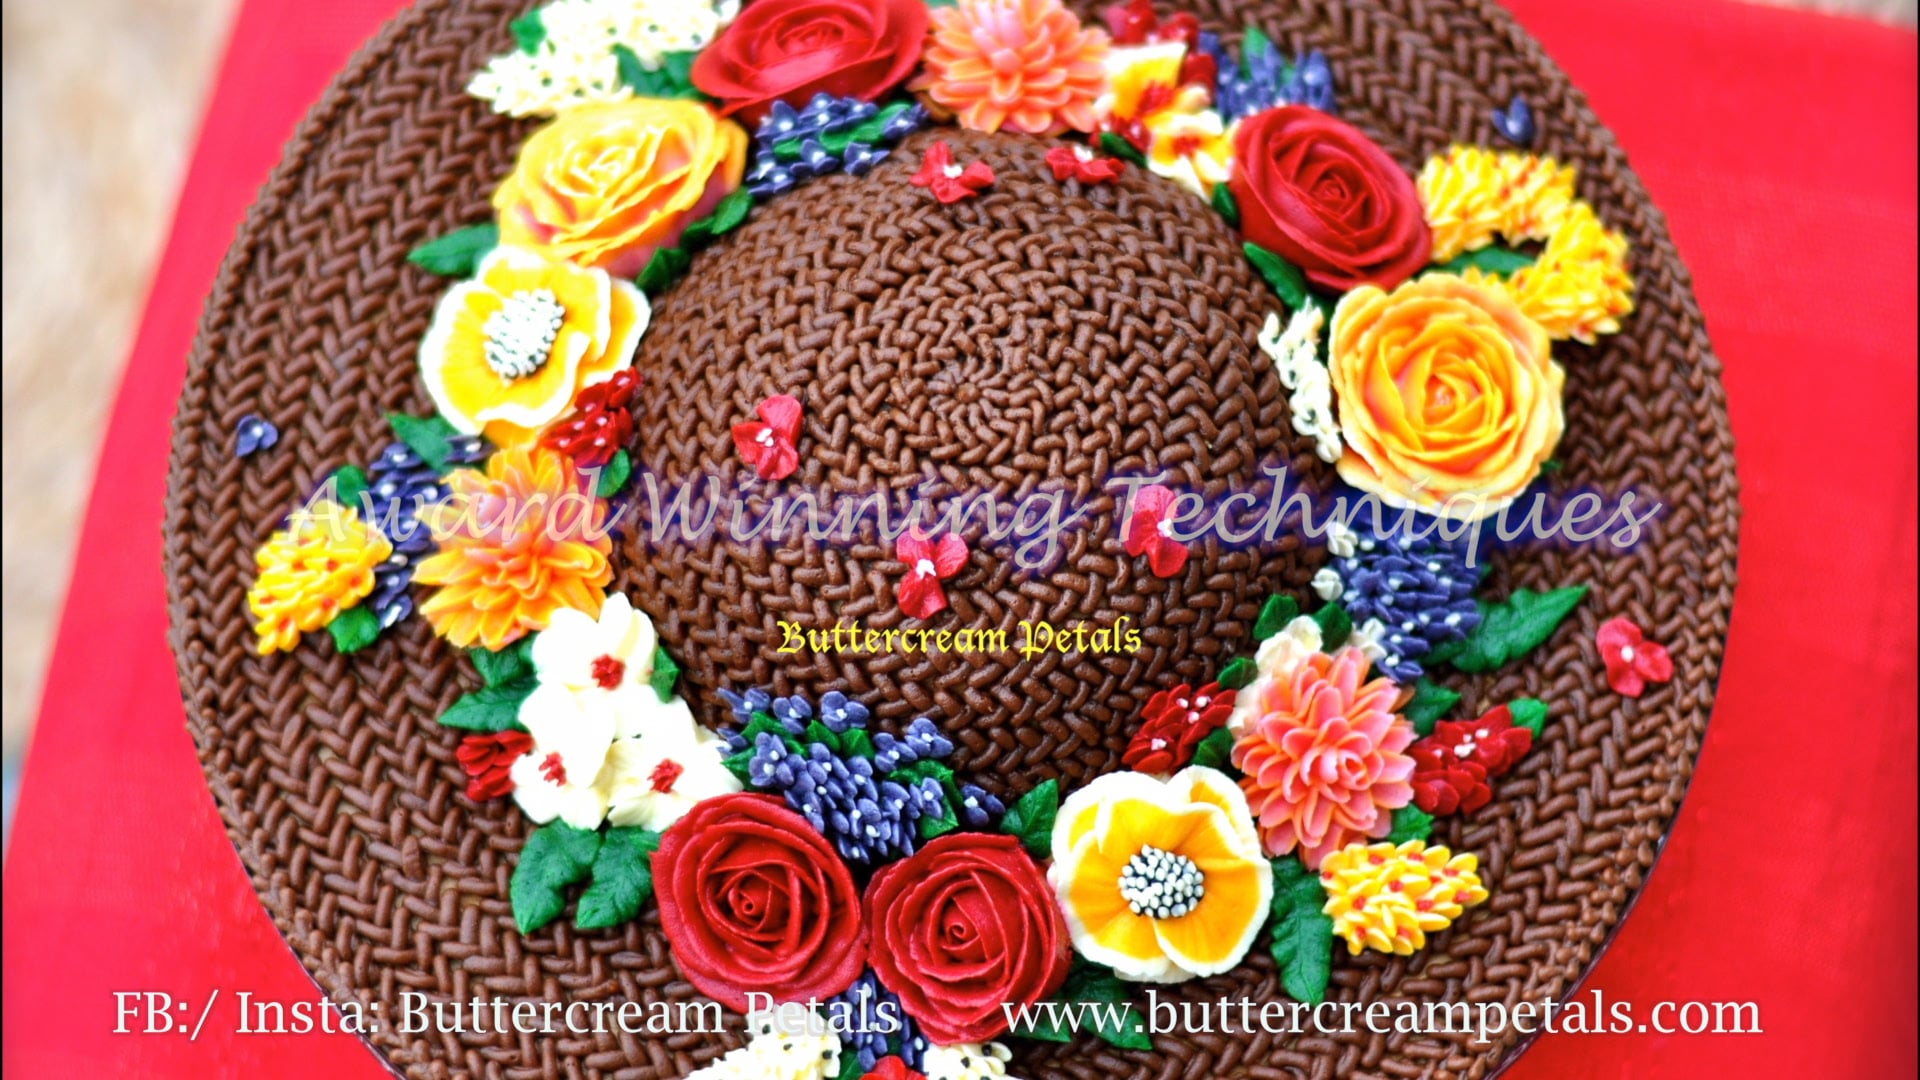 Buttercream Petals - Cake Art School